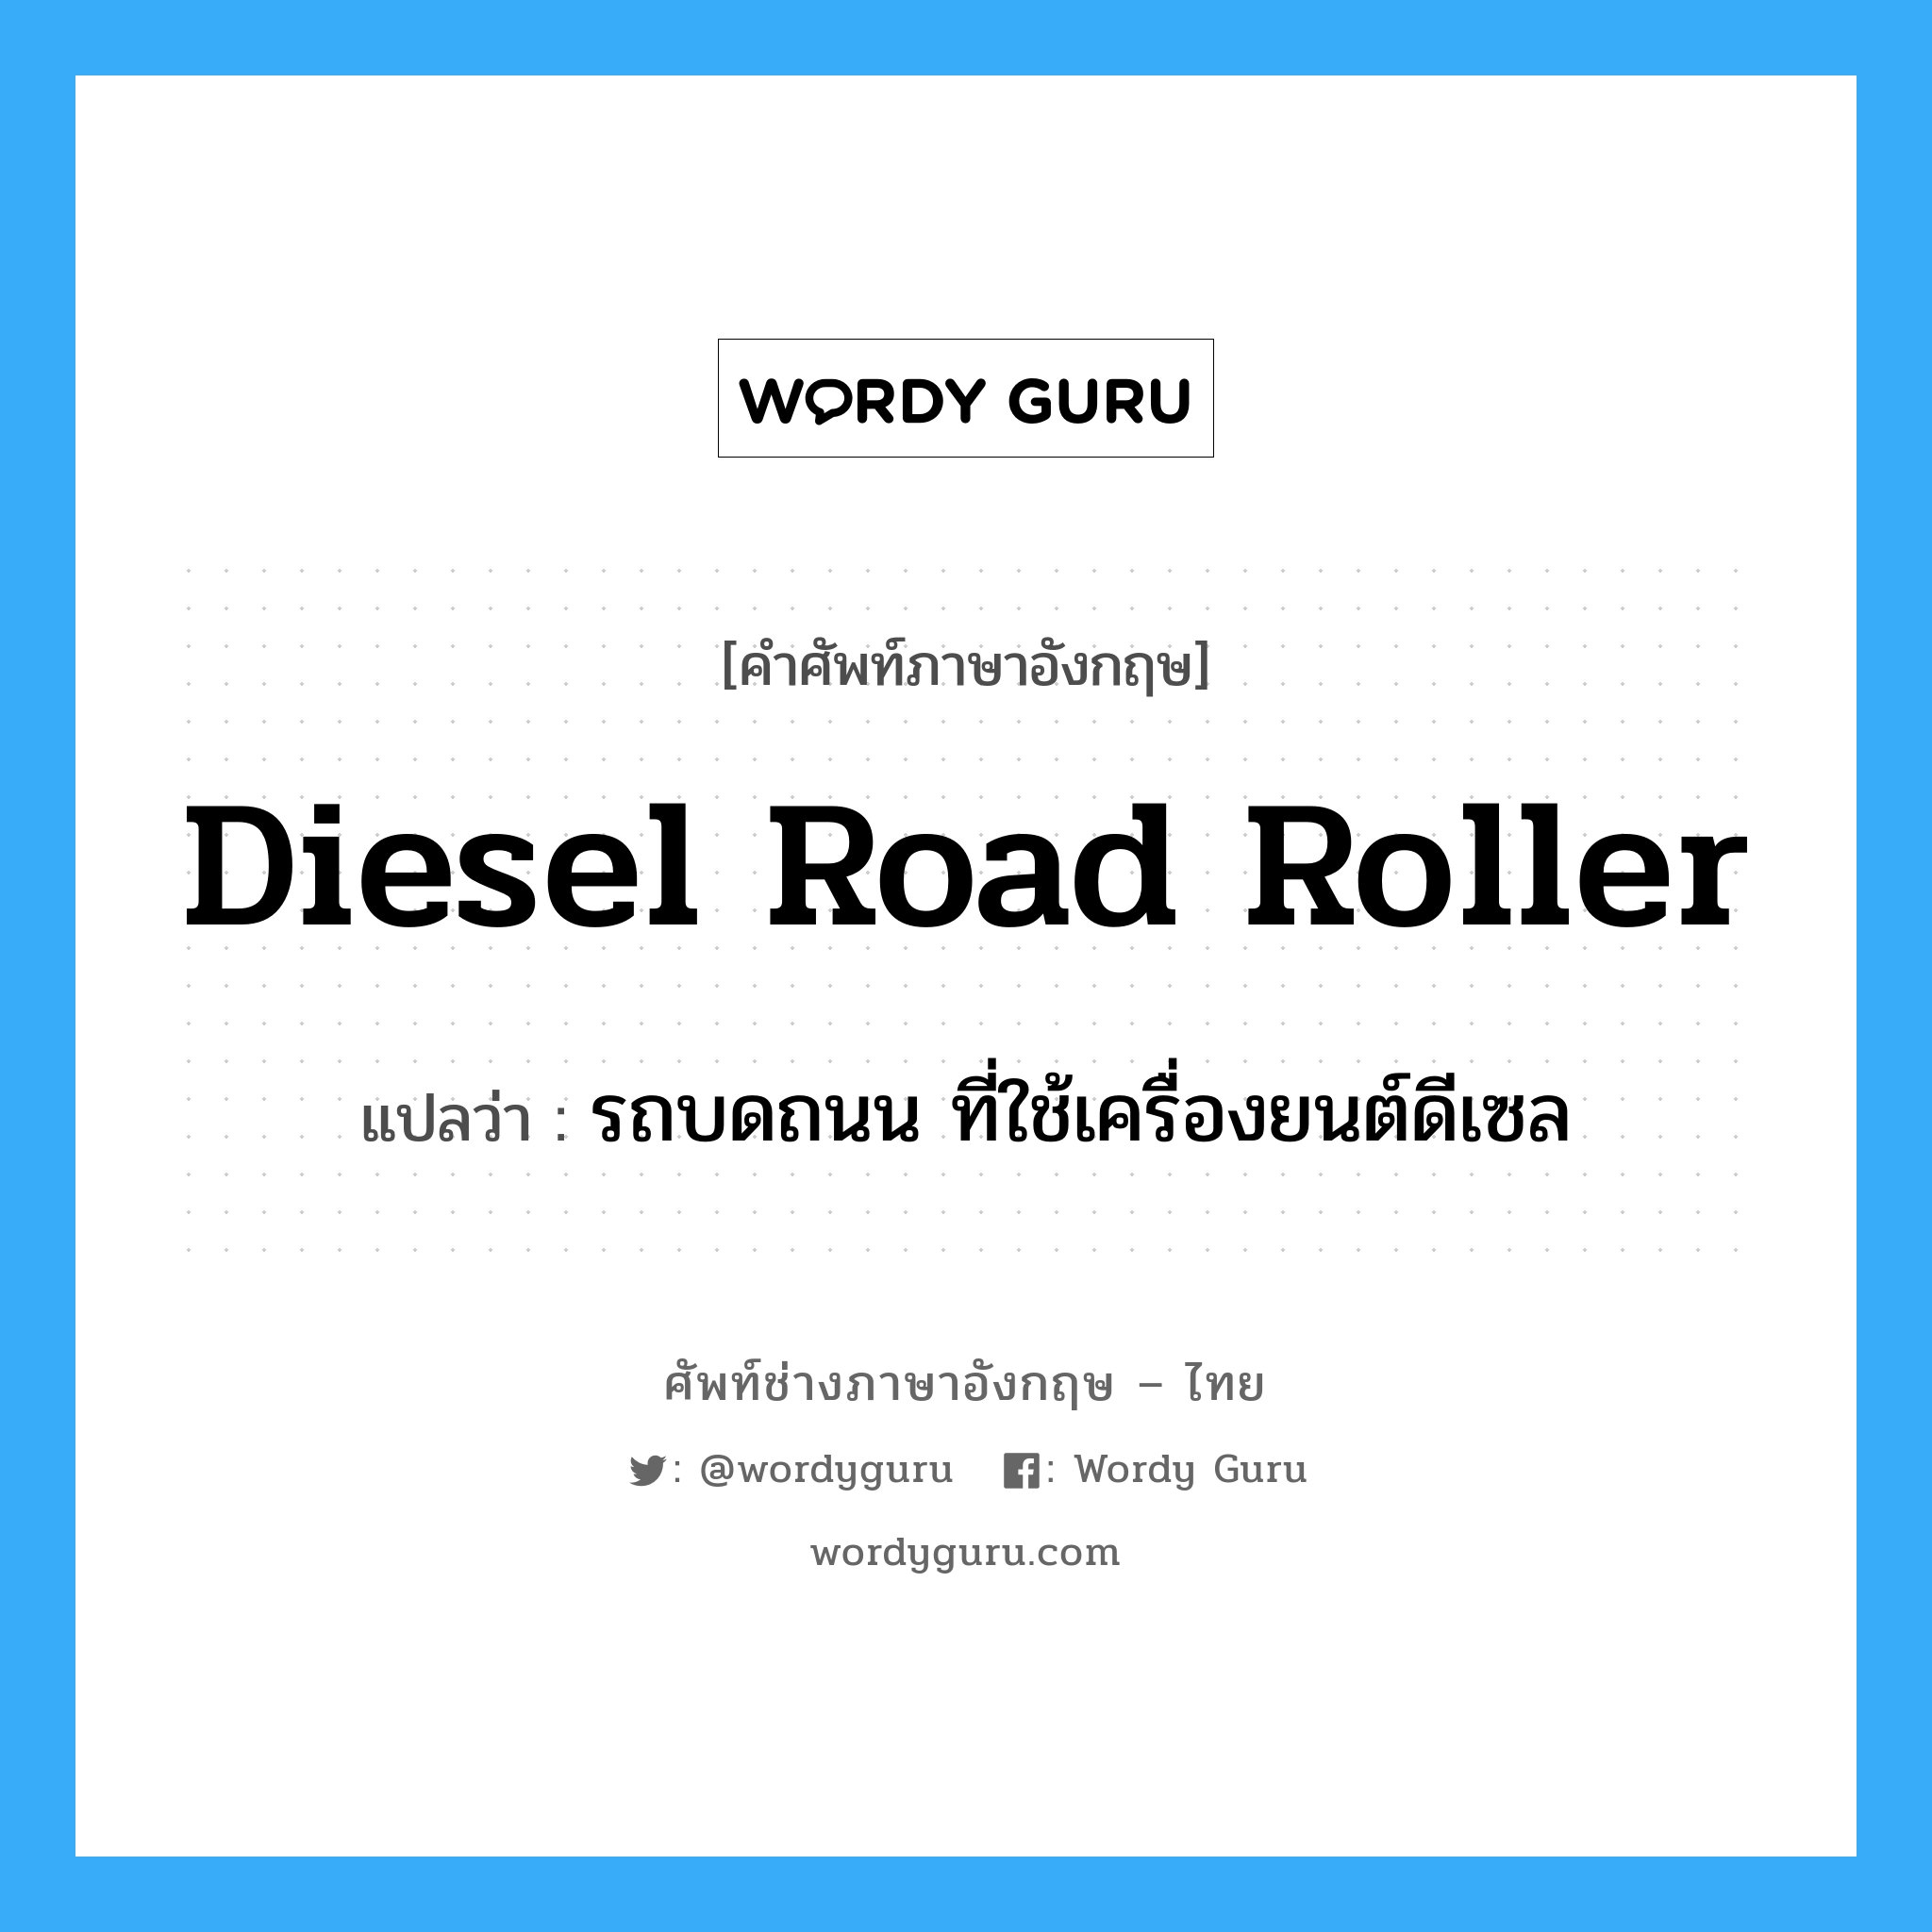 Diesel road roller แปลว่า?, คำศัพท์ช่างภาษาอังกฤษ - ไทย Diesel road roller คำศัพท์ภาษาอังกฤษ Diesel road roller แปลว่า รถบดถนน ที่ใช้เครื่องยนต์ดีเซล